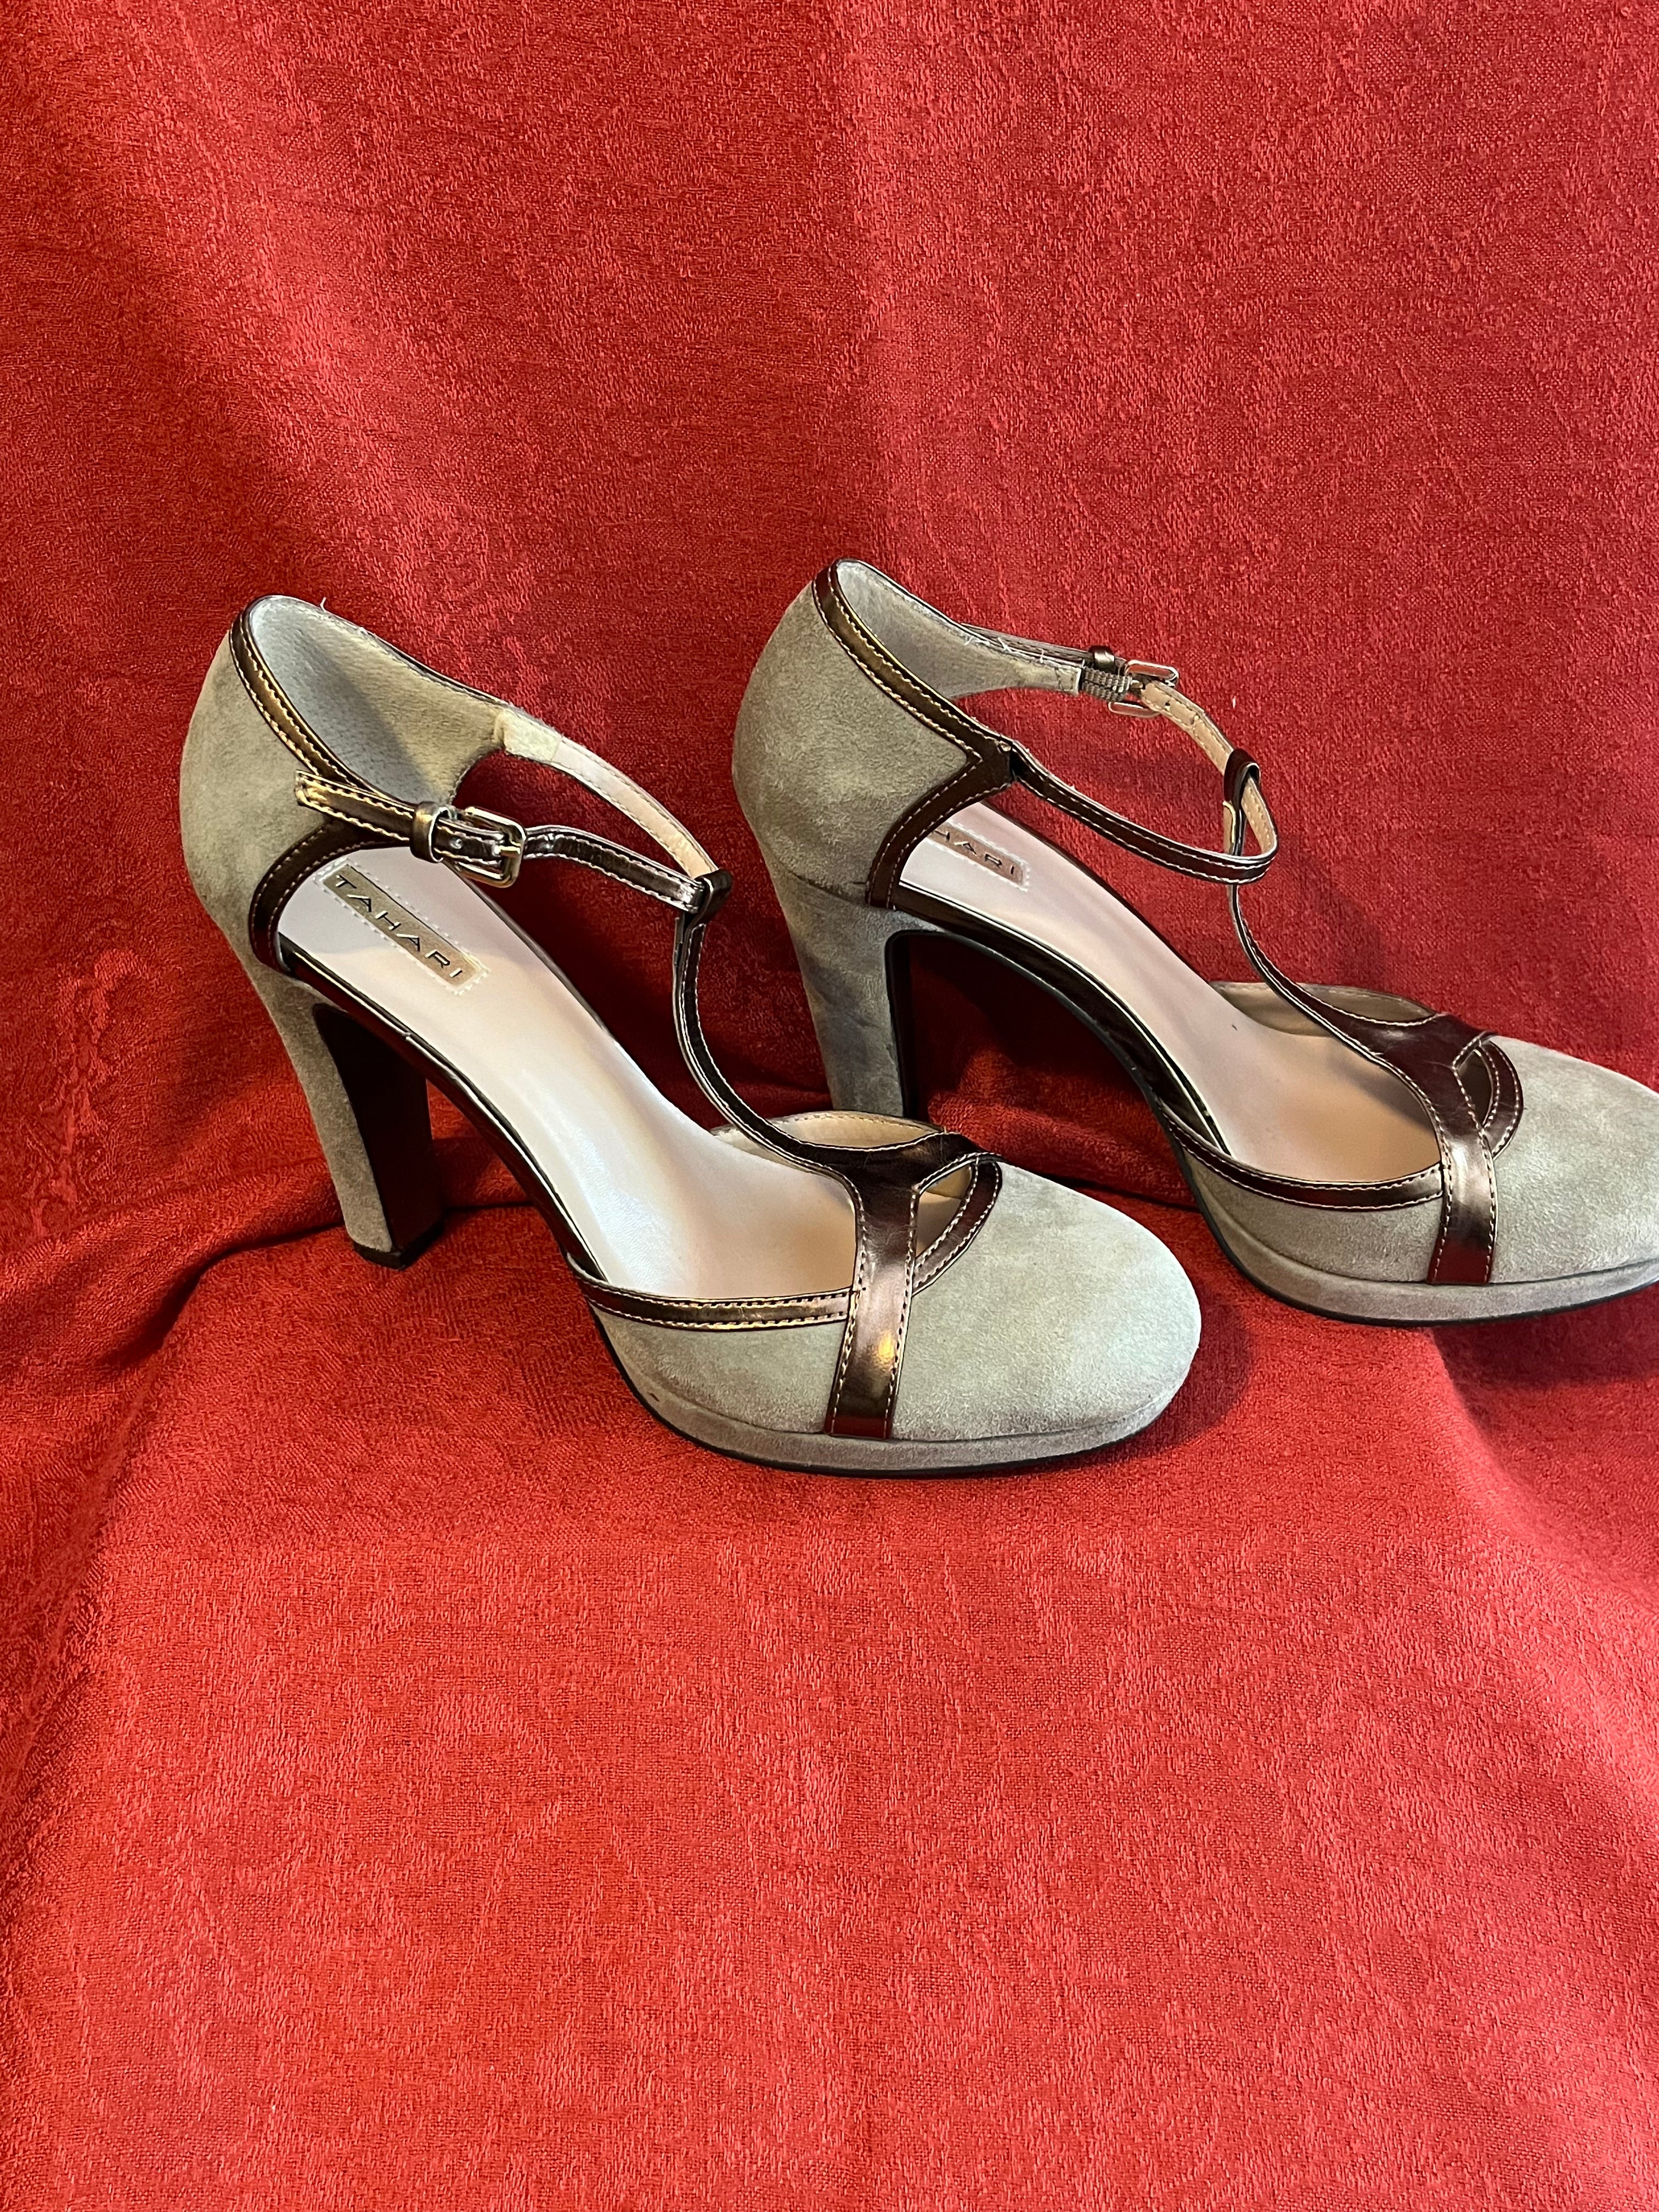 Sandal whit heel Copper Guess - Le Follie Shop